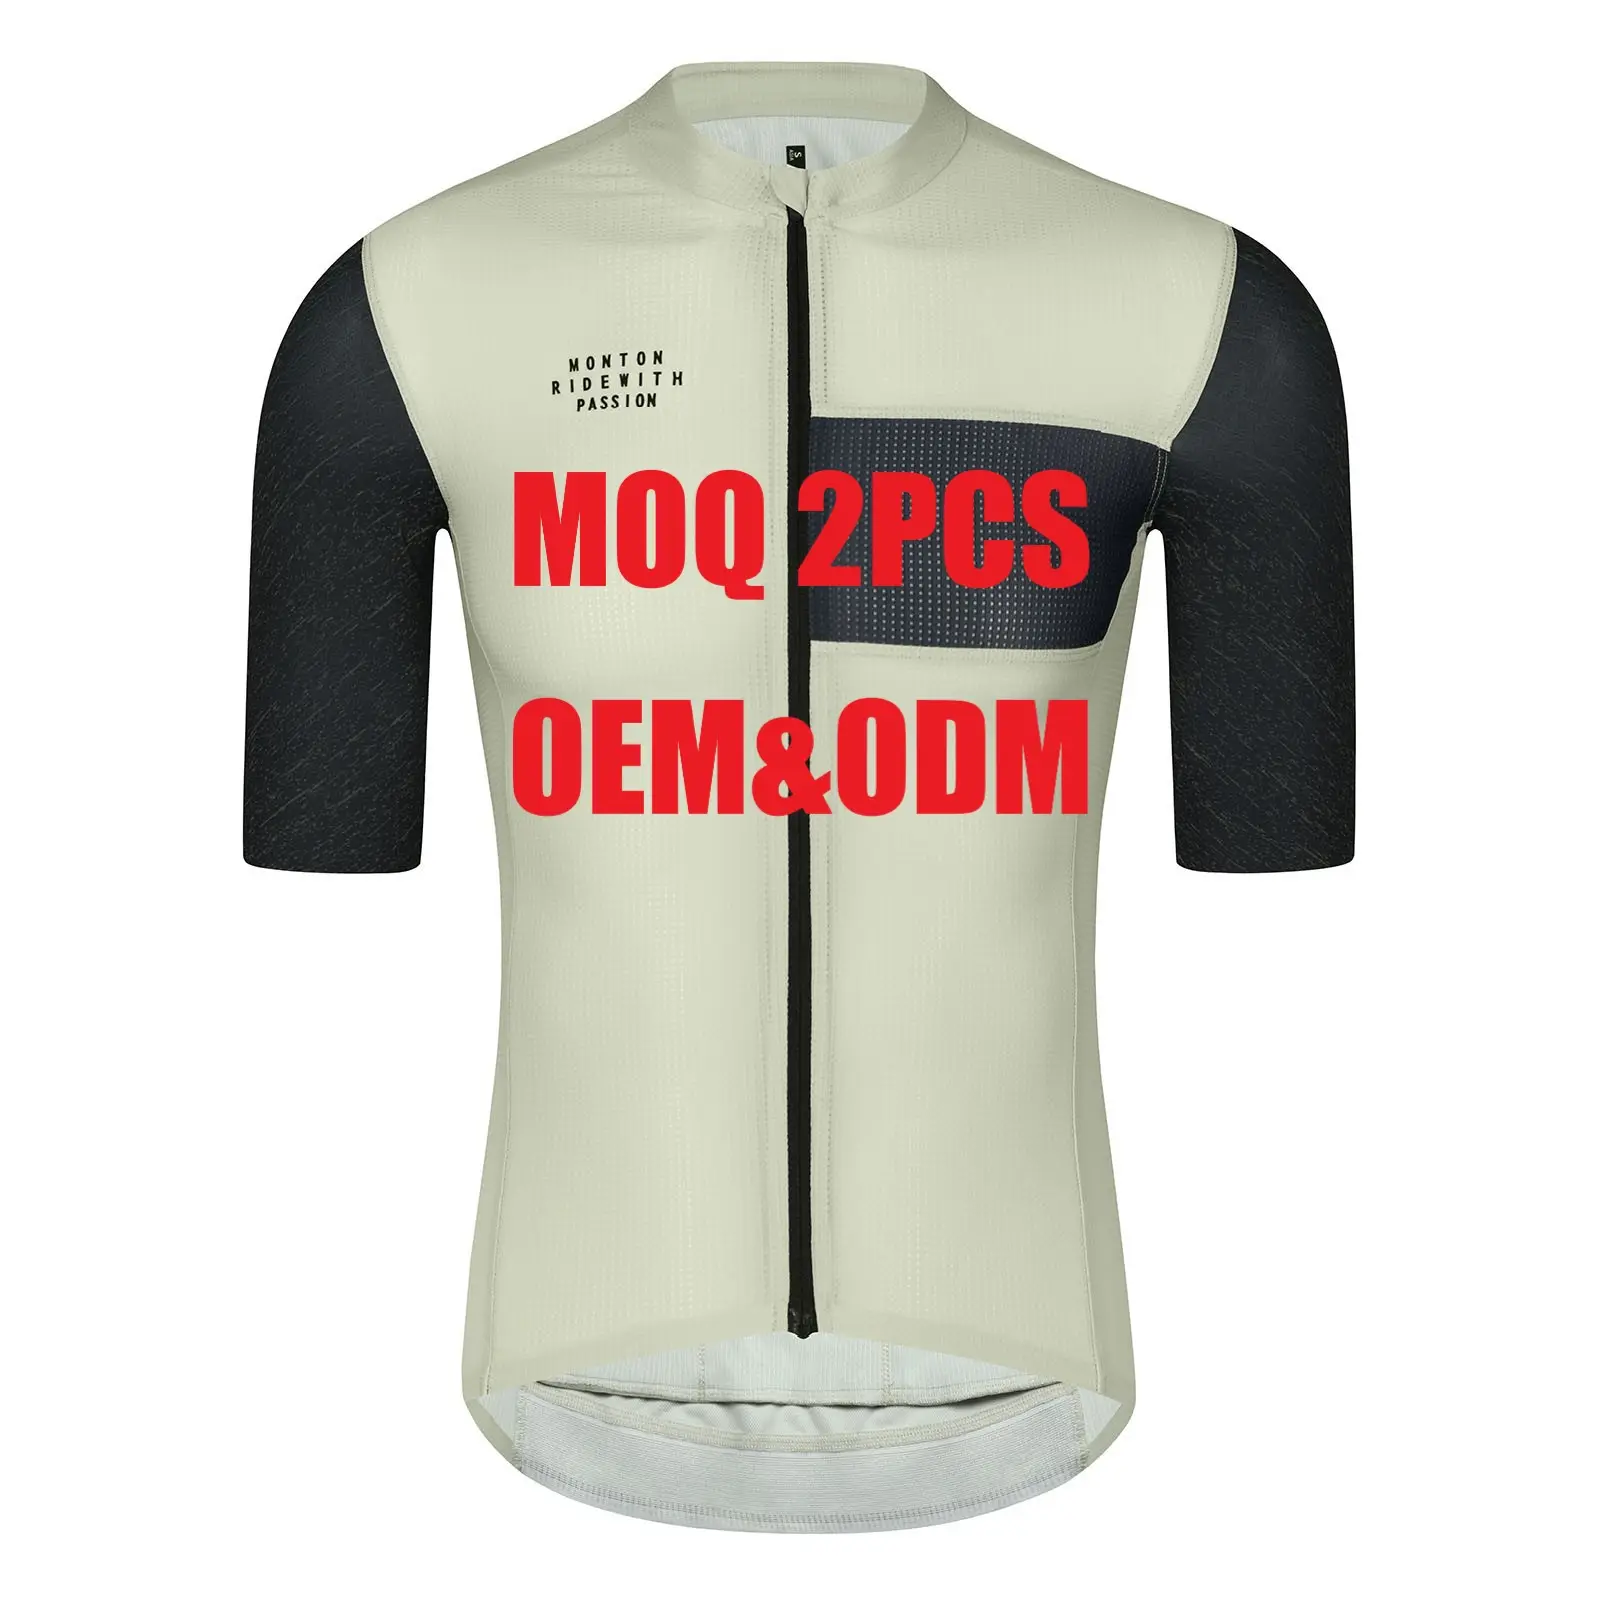 Monton Logo imprimé par sublimation personnalisée No Minimum Design Italy Pro Fit Team Bike Sets Cycling Wear Cycling Jersey for Men Women